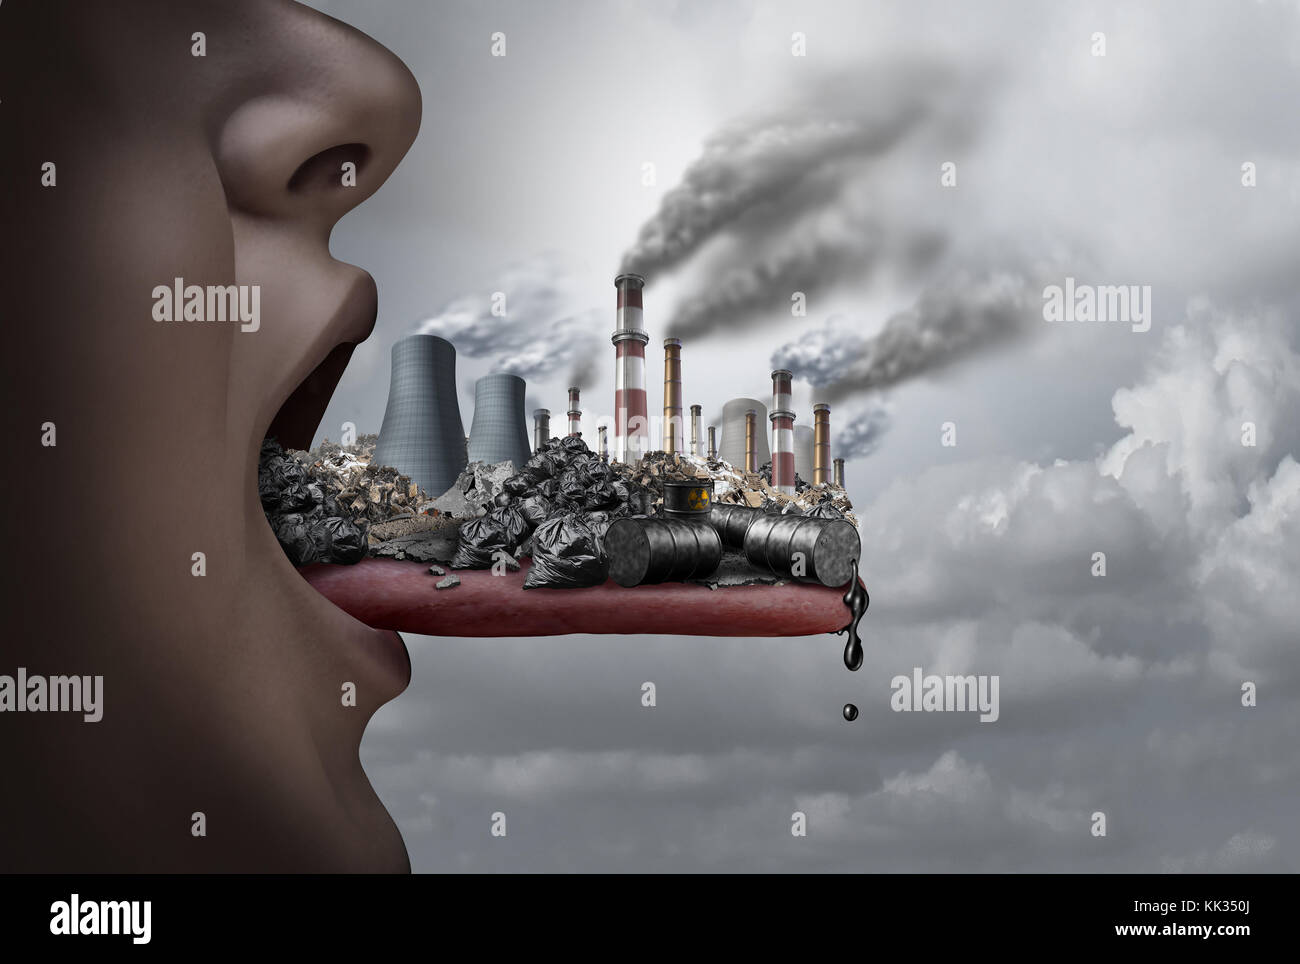 Giftige Schadstoffe, die im menschlichen Körper und essen Schadstoffe als  offener Mund einnehmen der industriellen Giftstoffe mit 3D-Illustration  Elemente Stockfotografie - Alamy